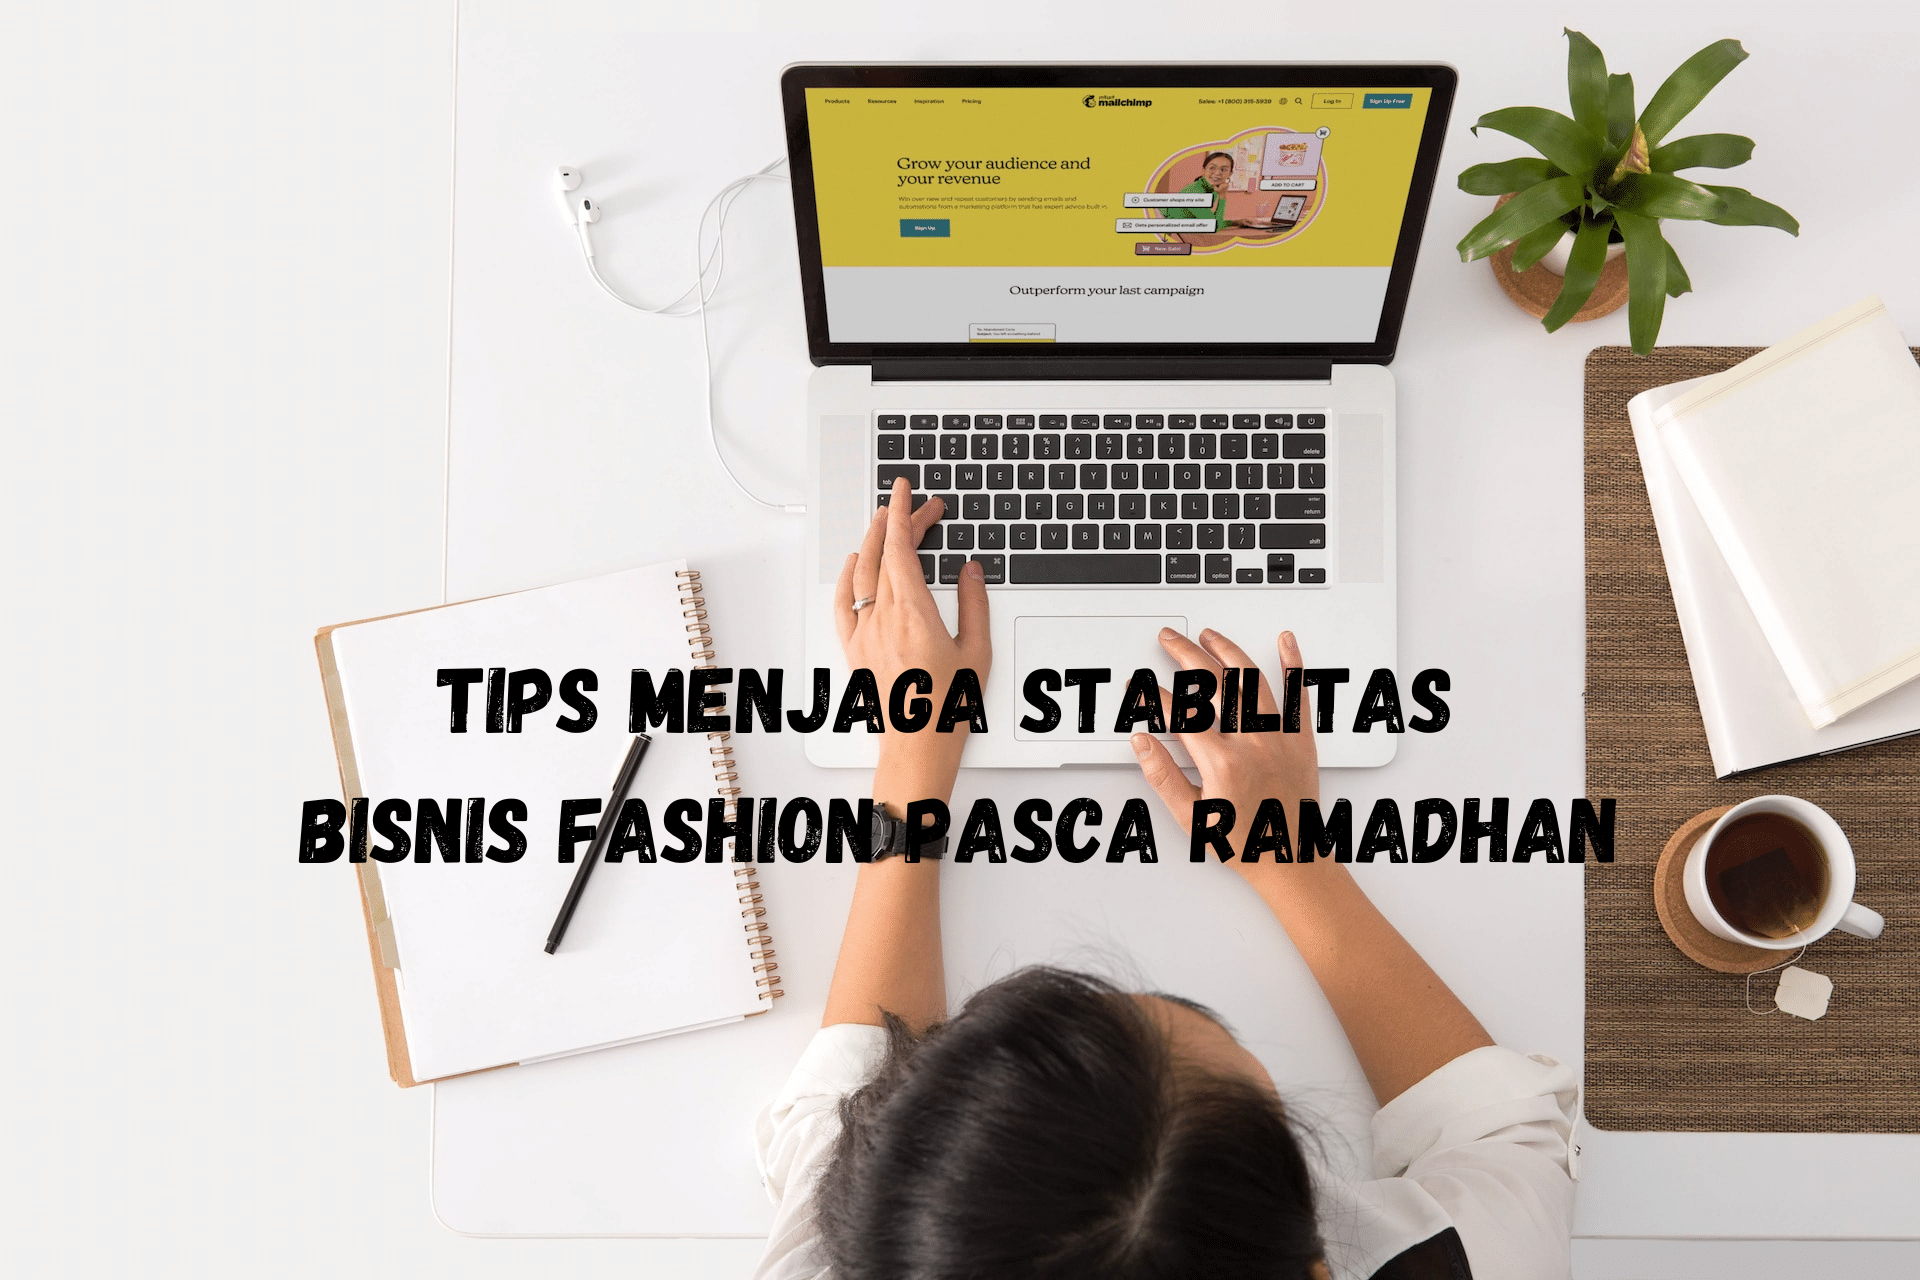 Tips Menjaga Stabilitas Bisnis Fashion Pasca Ramadhan